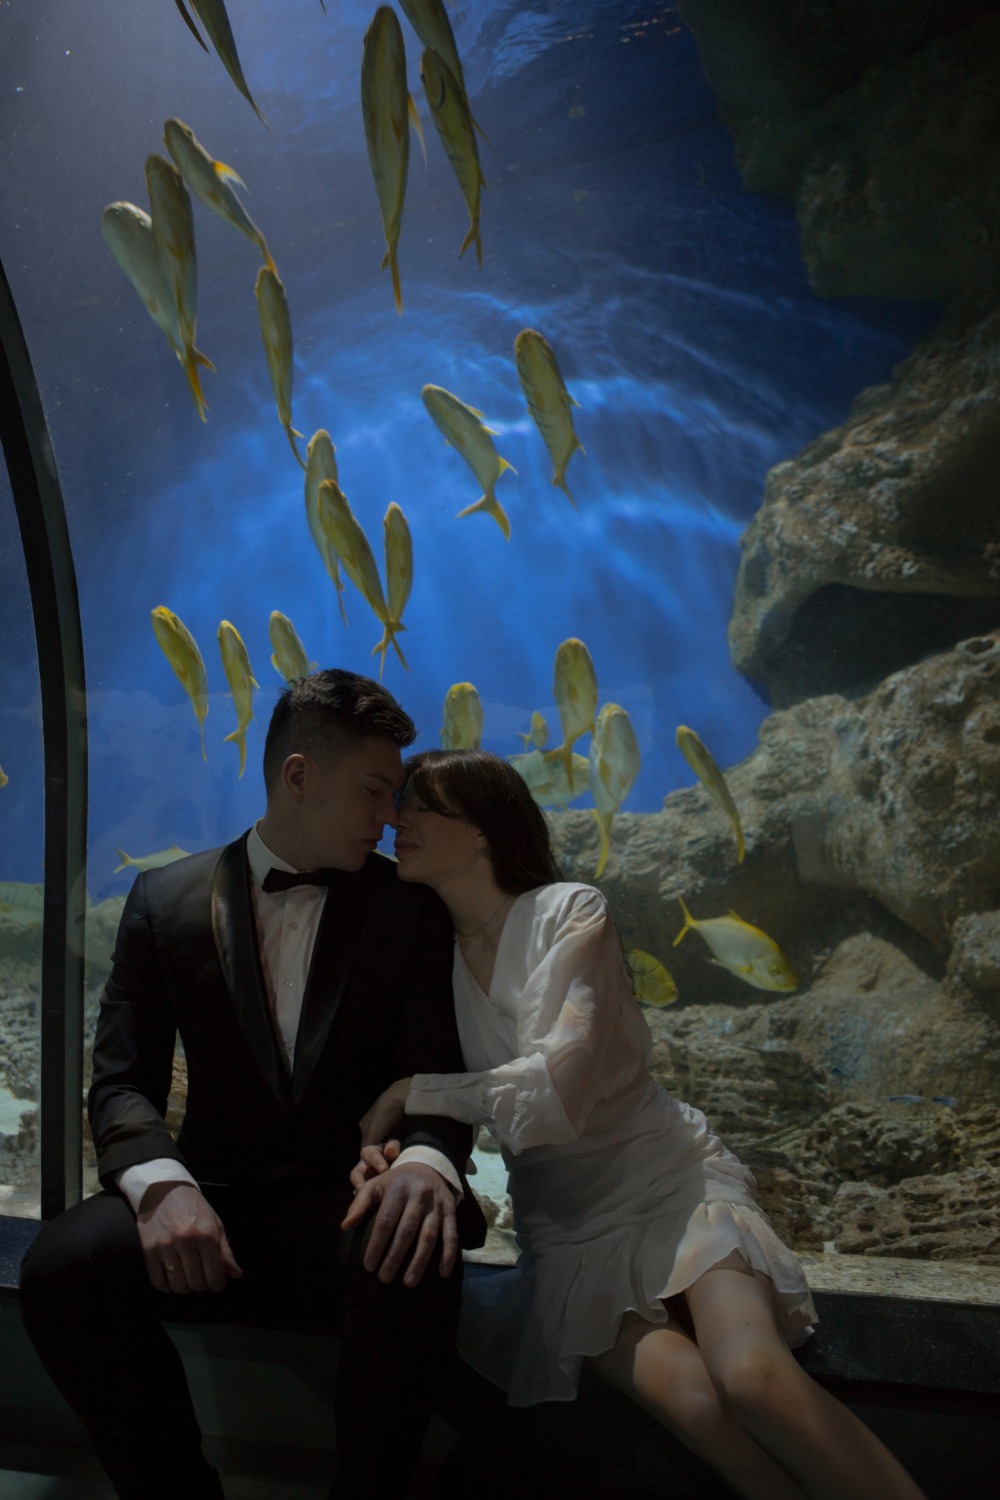 Свадебная фотосессия в океанариуме